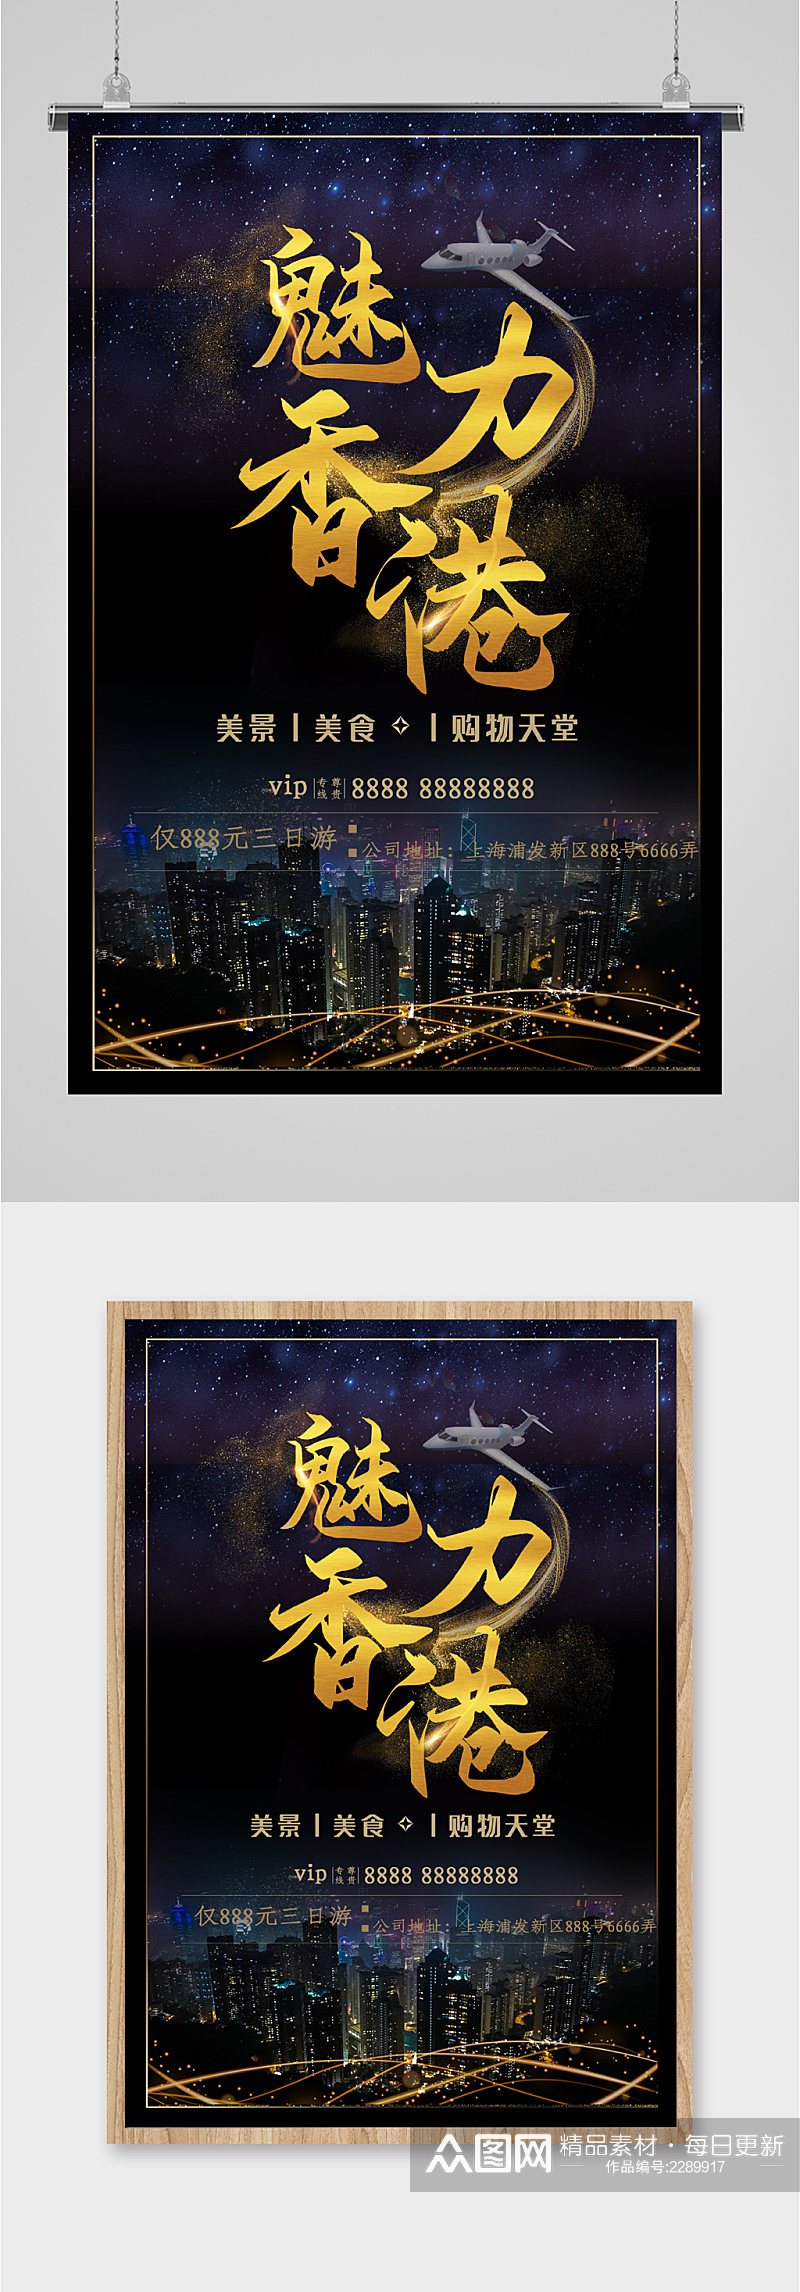 魅力香港黑色背景旅游海报素材